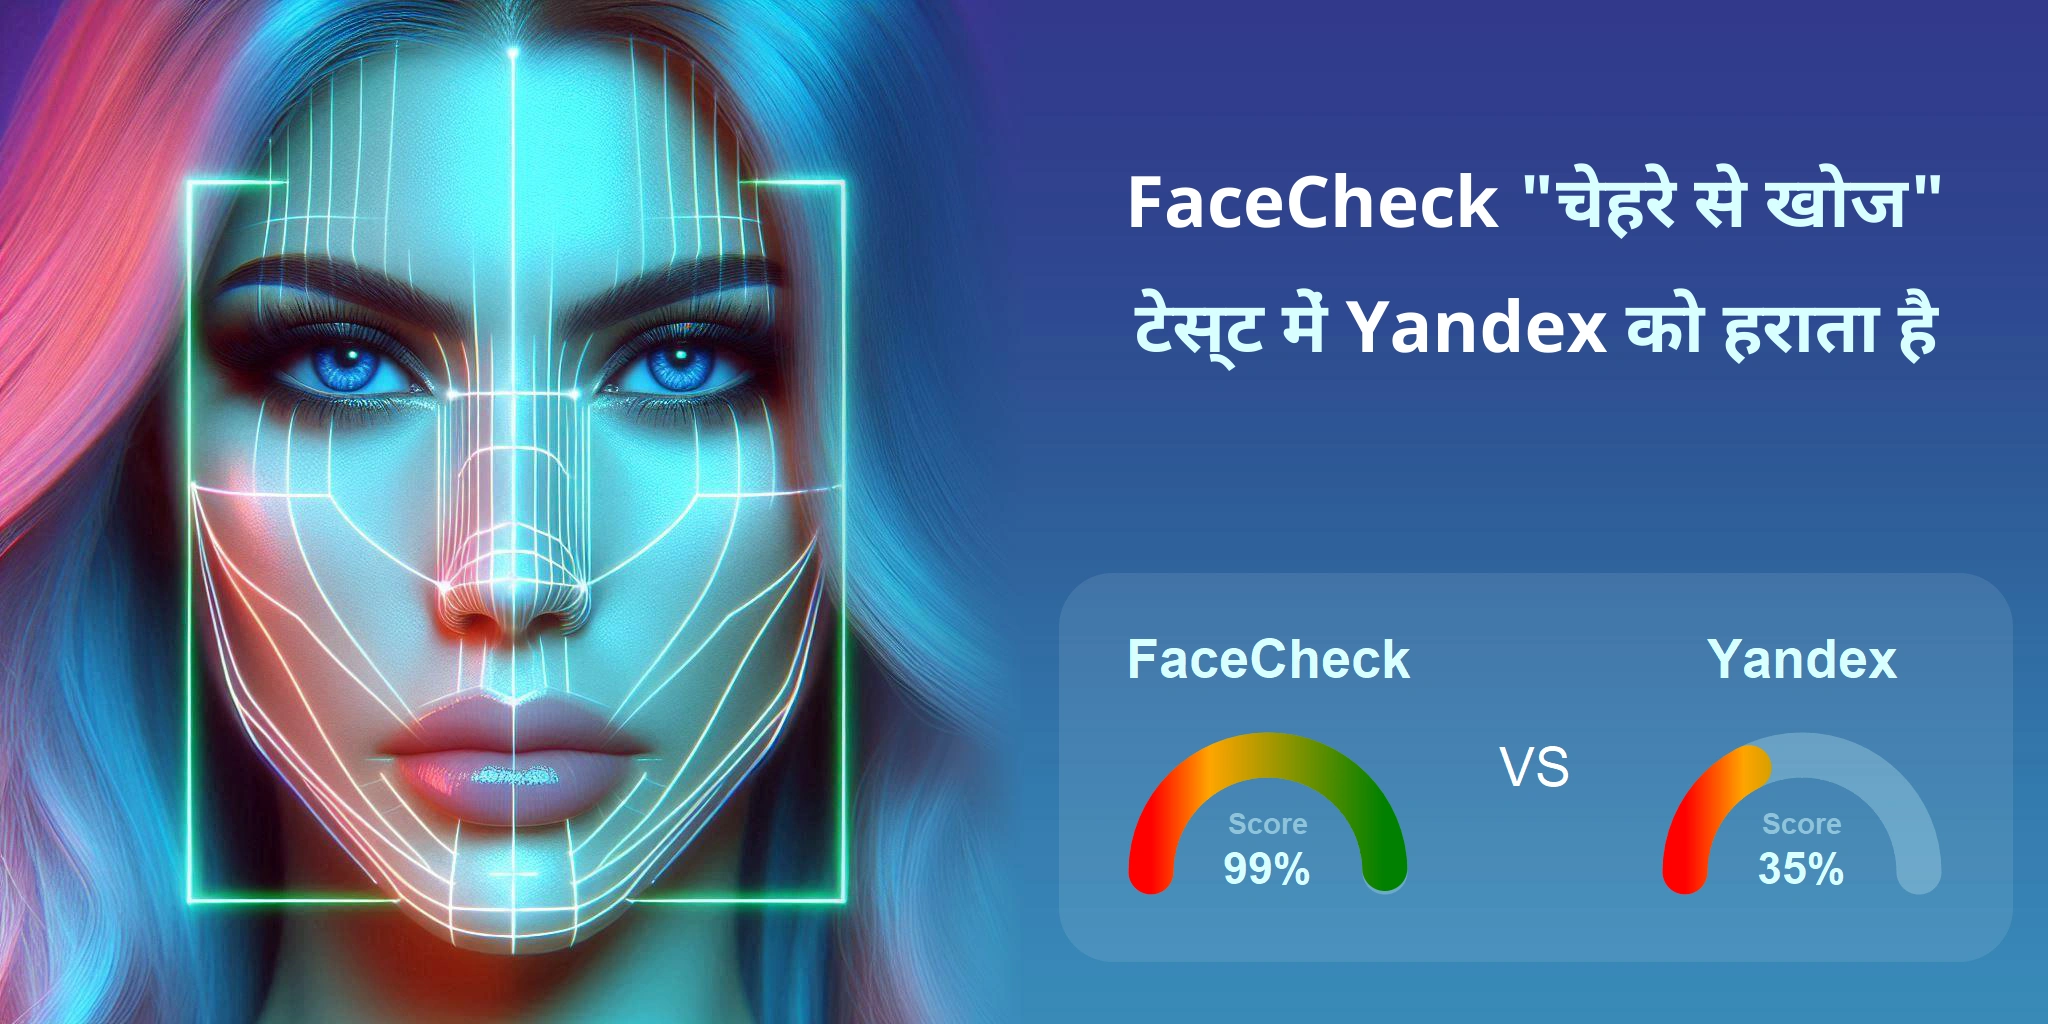 चेहरे की खोज के लिए कौन बेहतर है: <br>FaceCheck या Yandex?